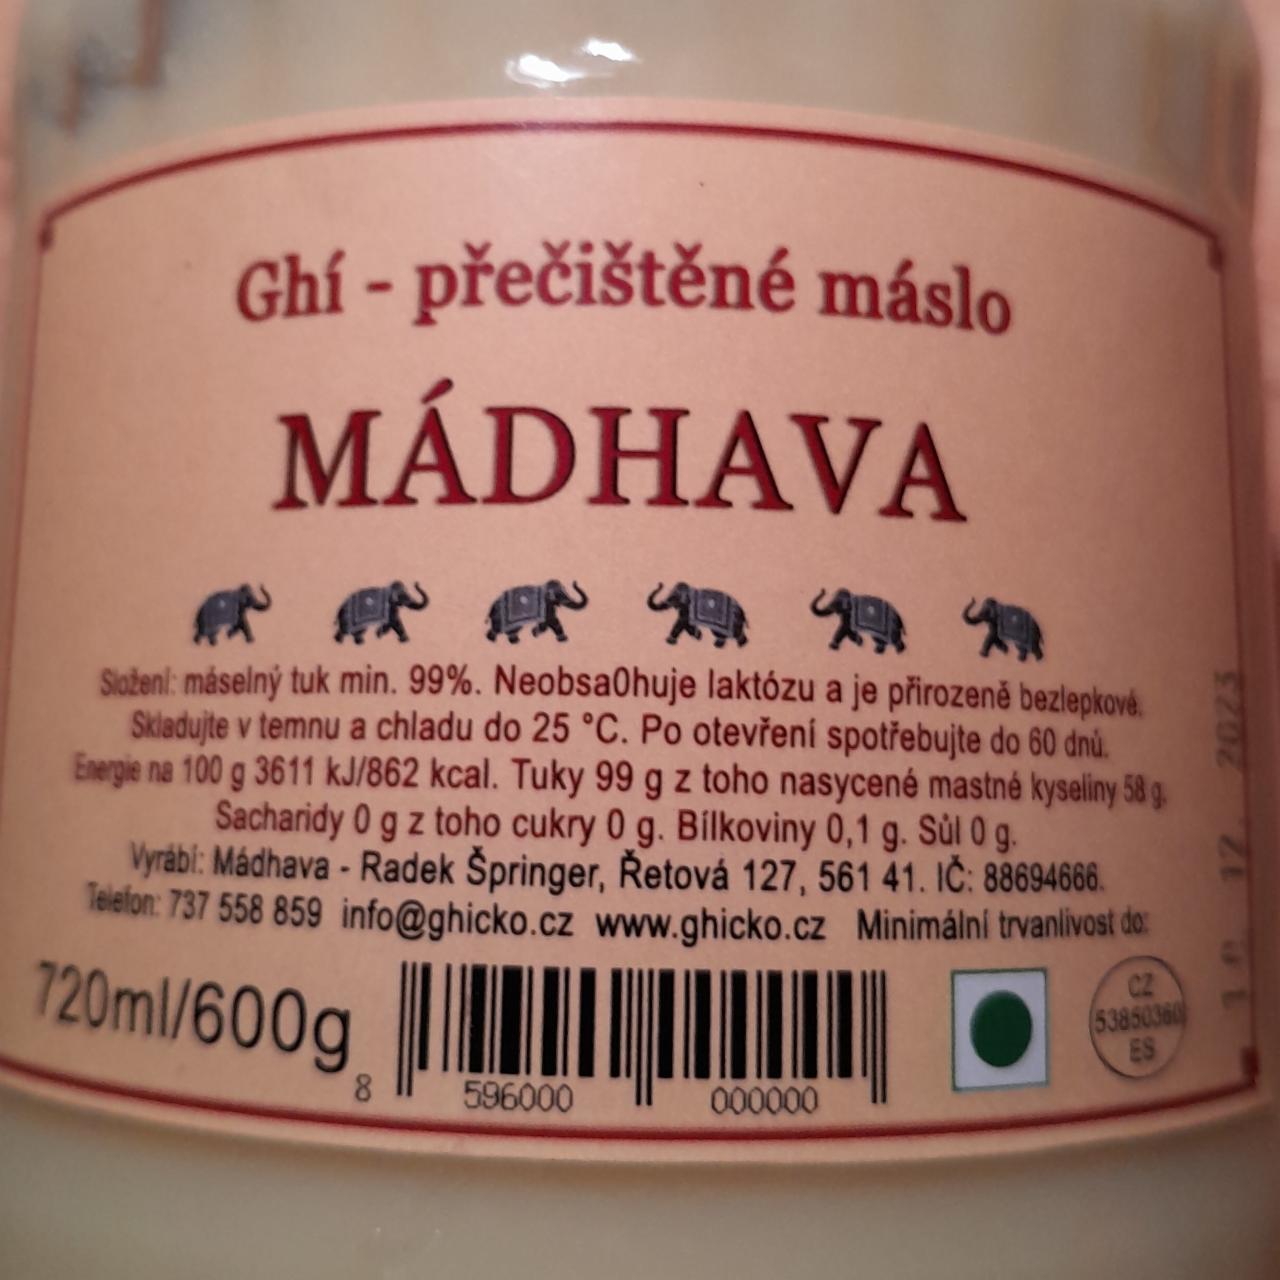 Fotografie - Ghí přečištěné máslo Mádhava